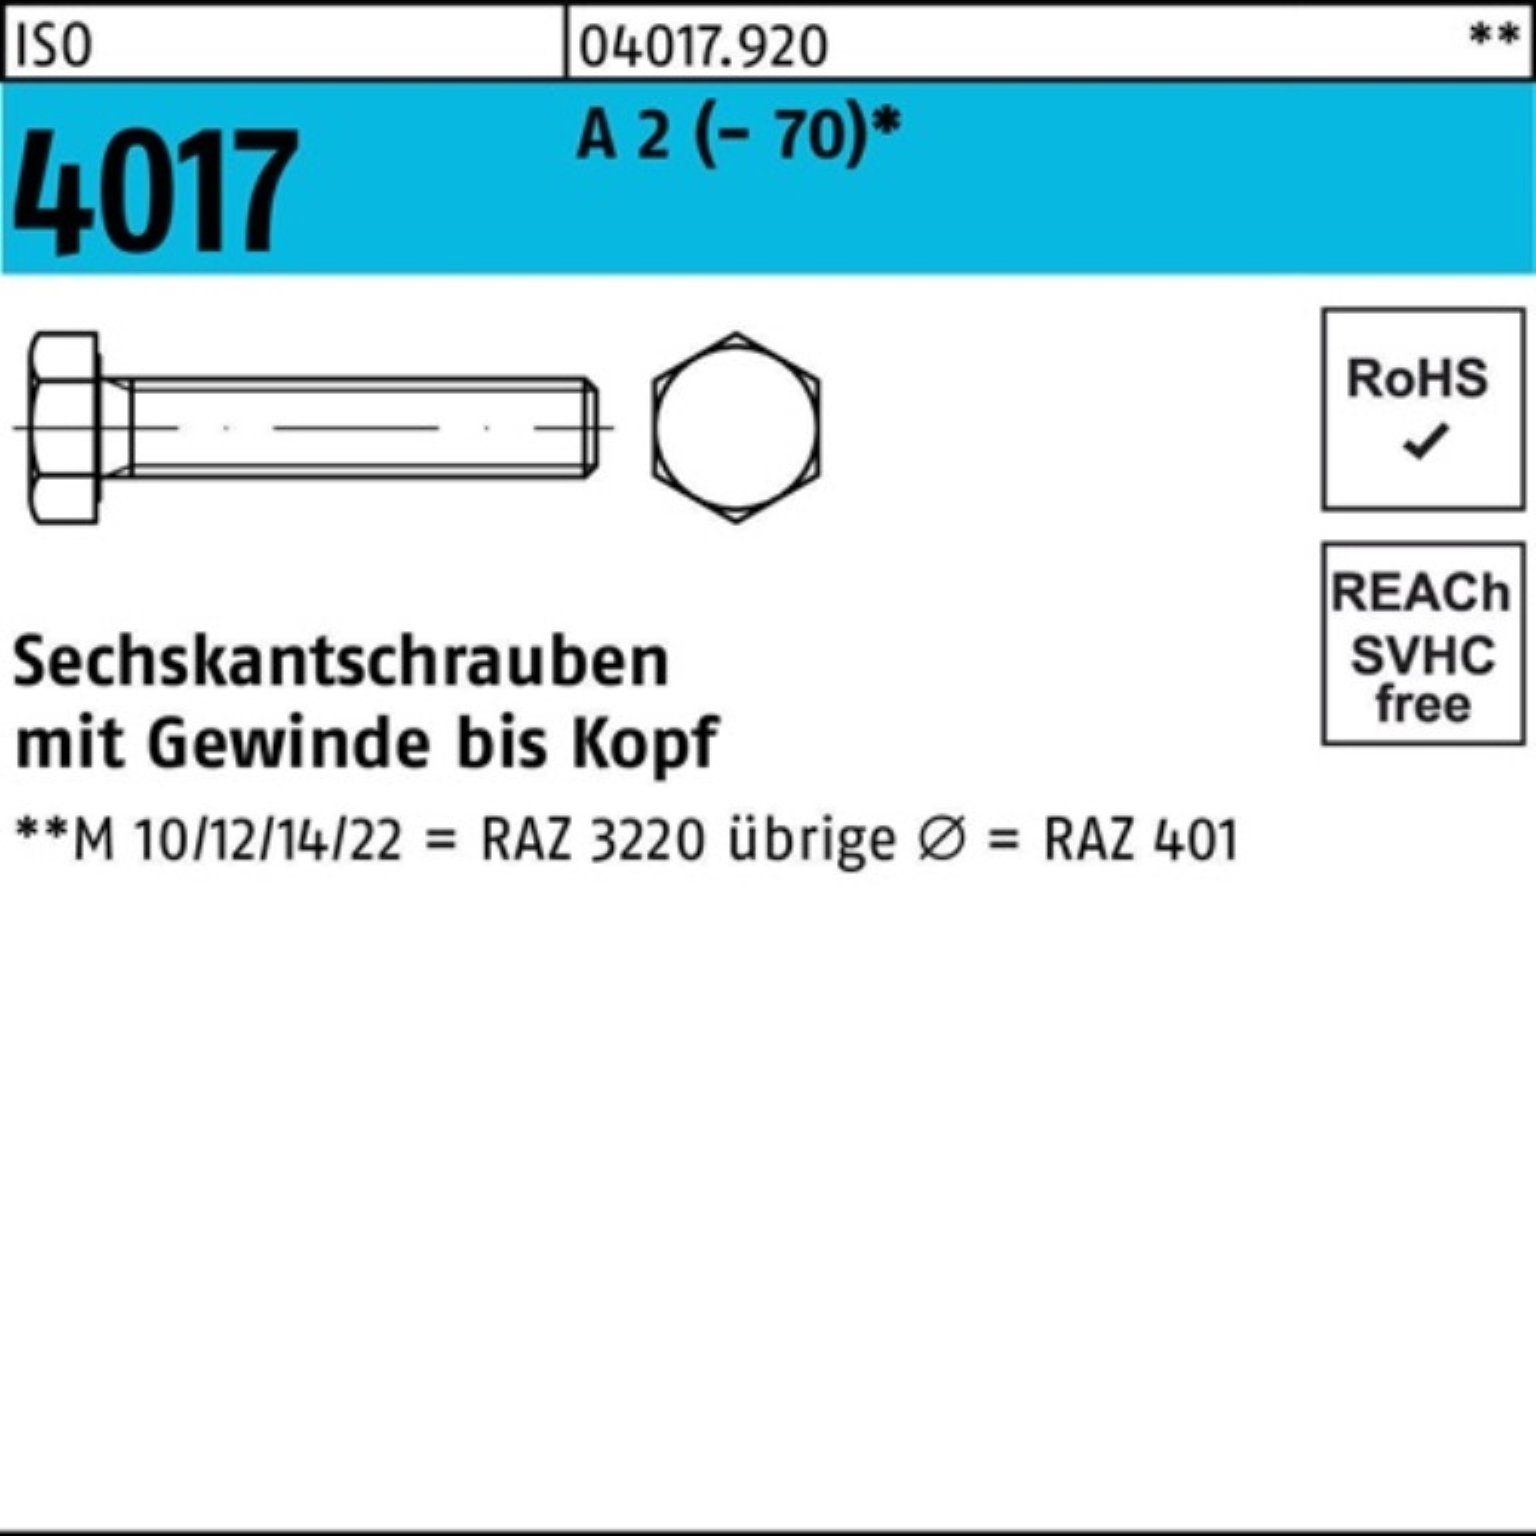 Bufab Sechskantschraube 4017 75 50 Sechskantschraube VG 100er M12x Pack A ISO (70) Stück 2